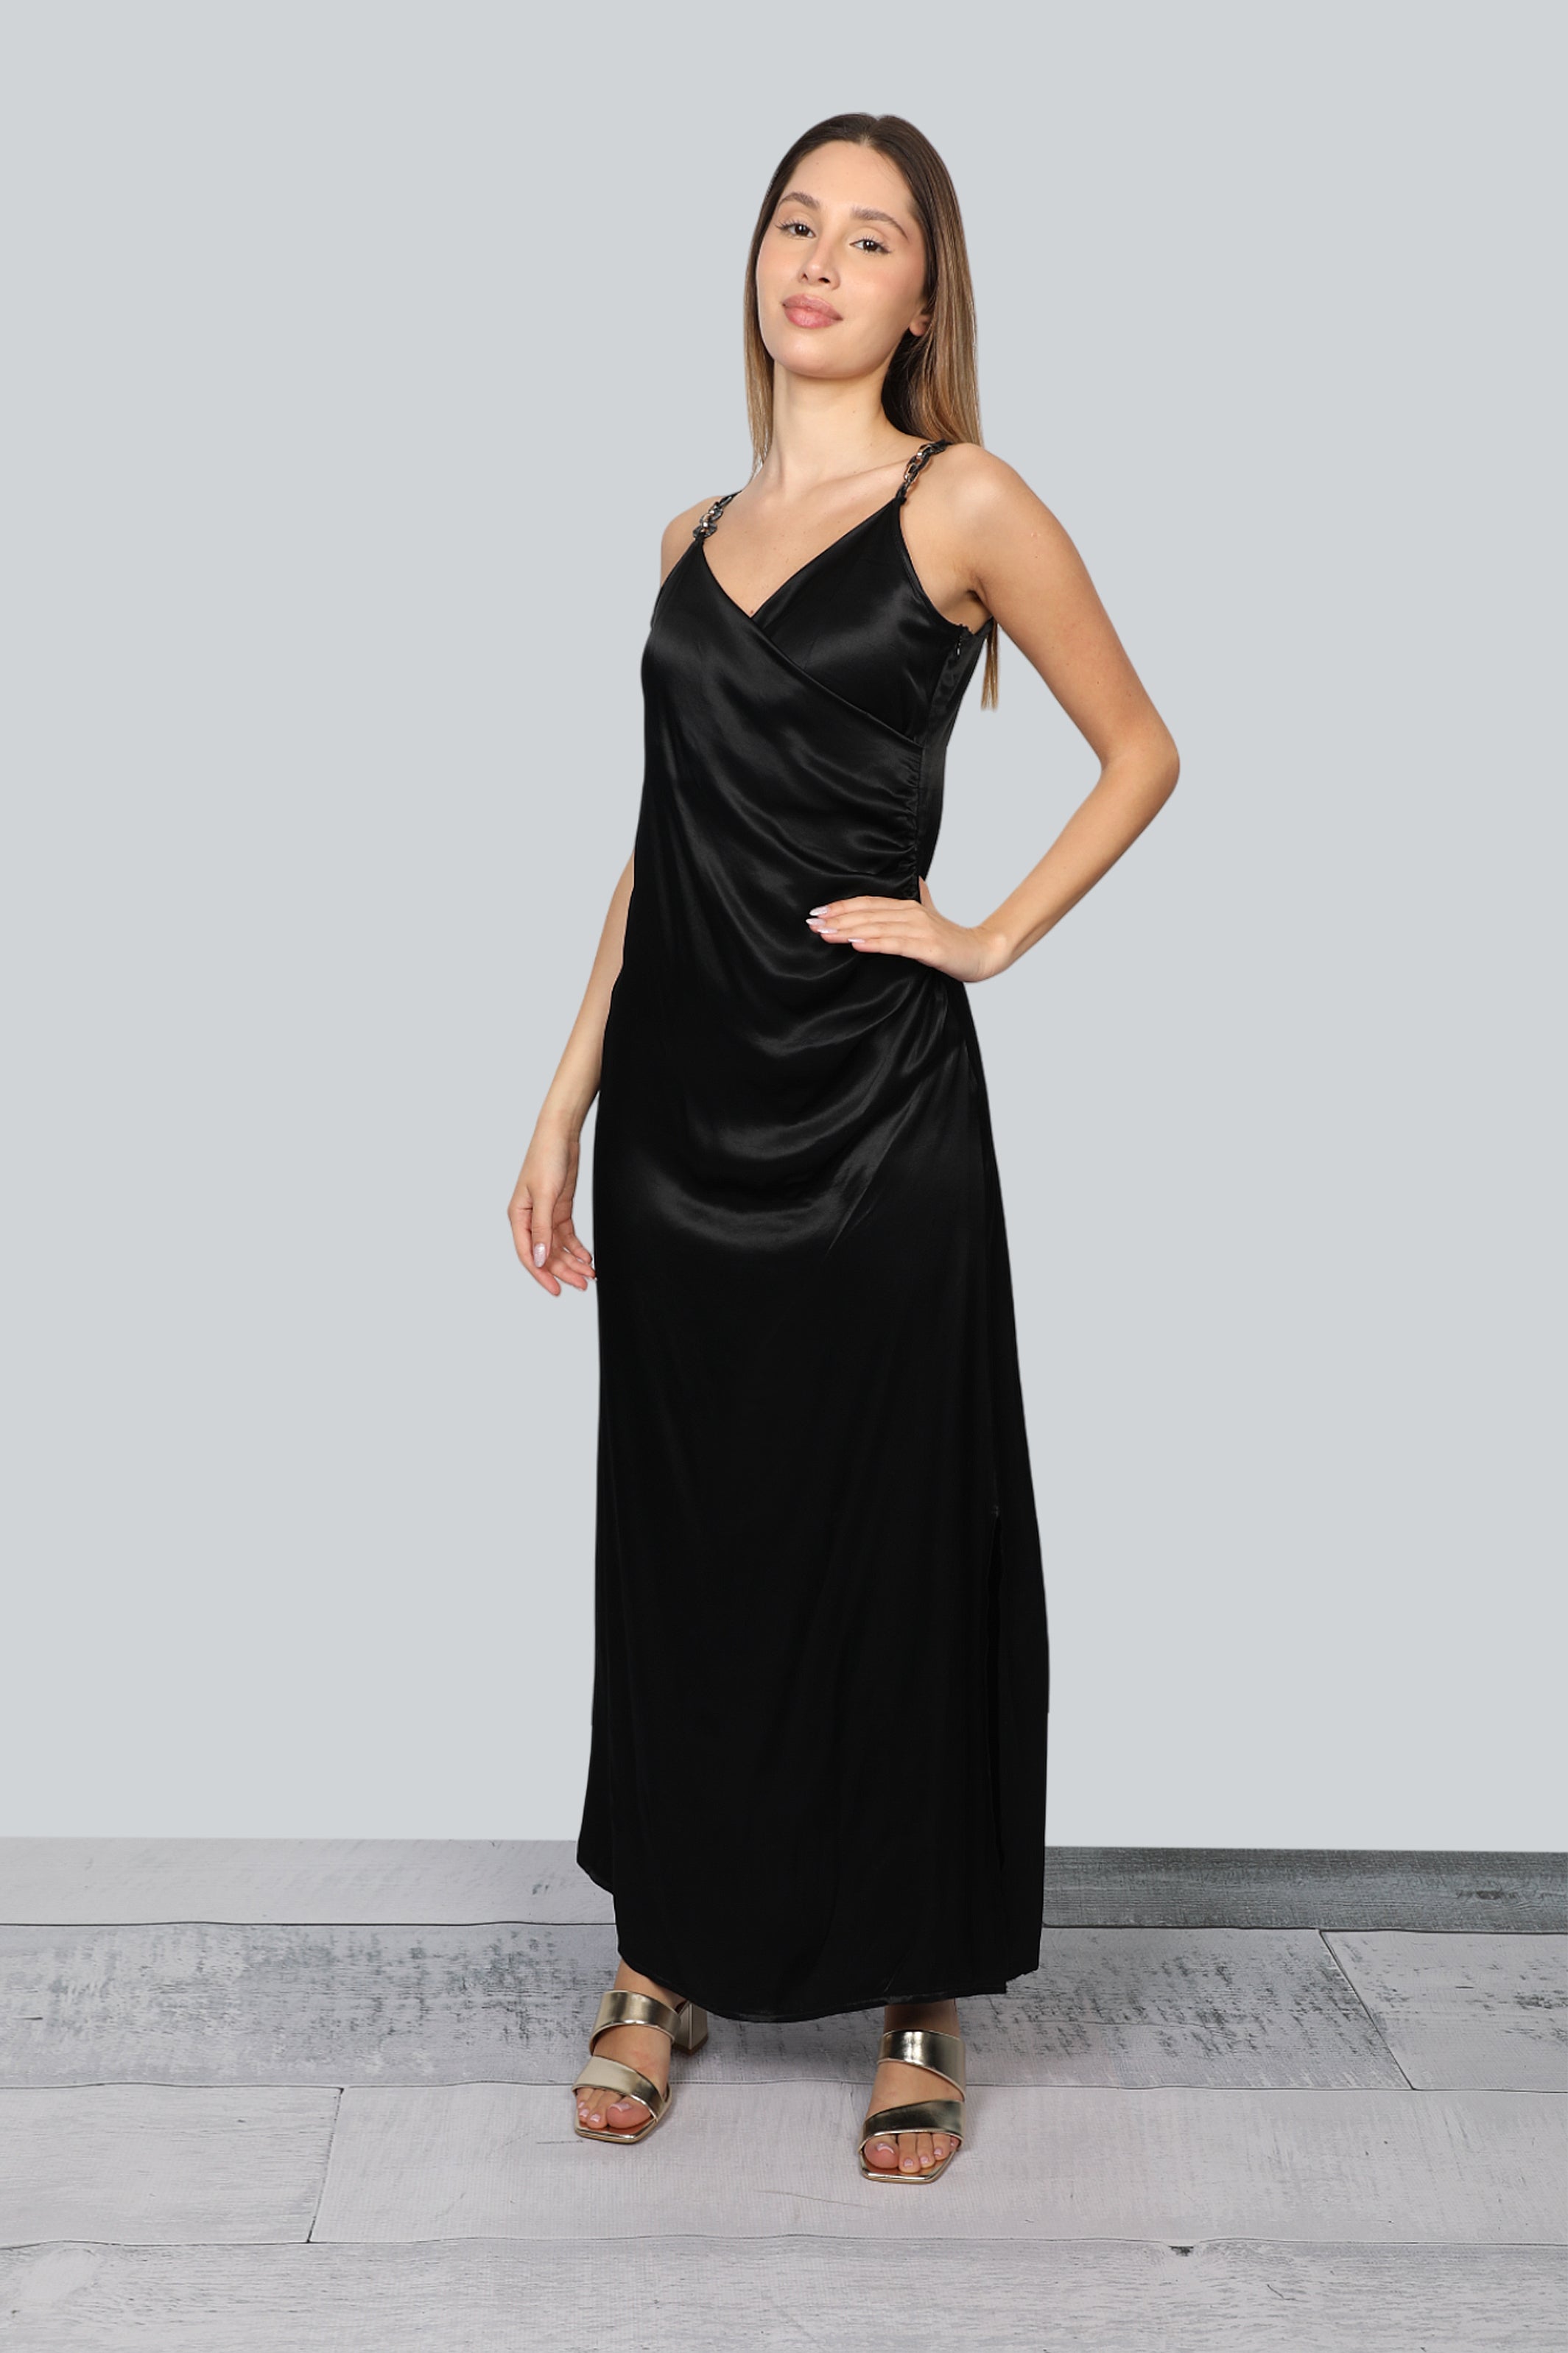 Long Classy Black Dress With Shoulder Design